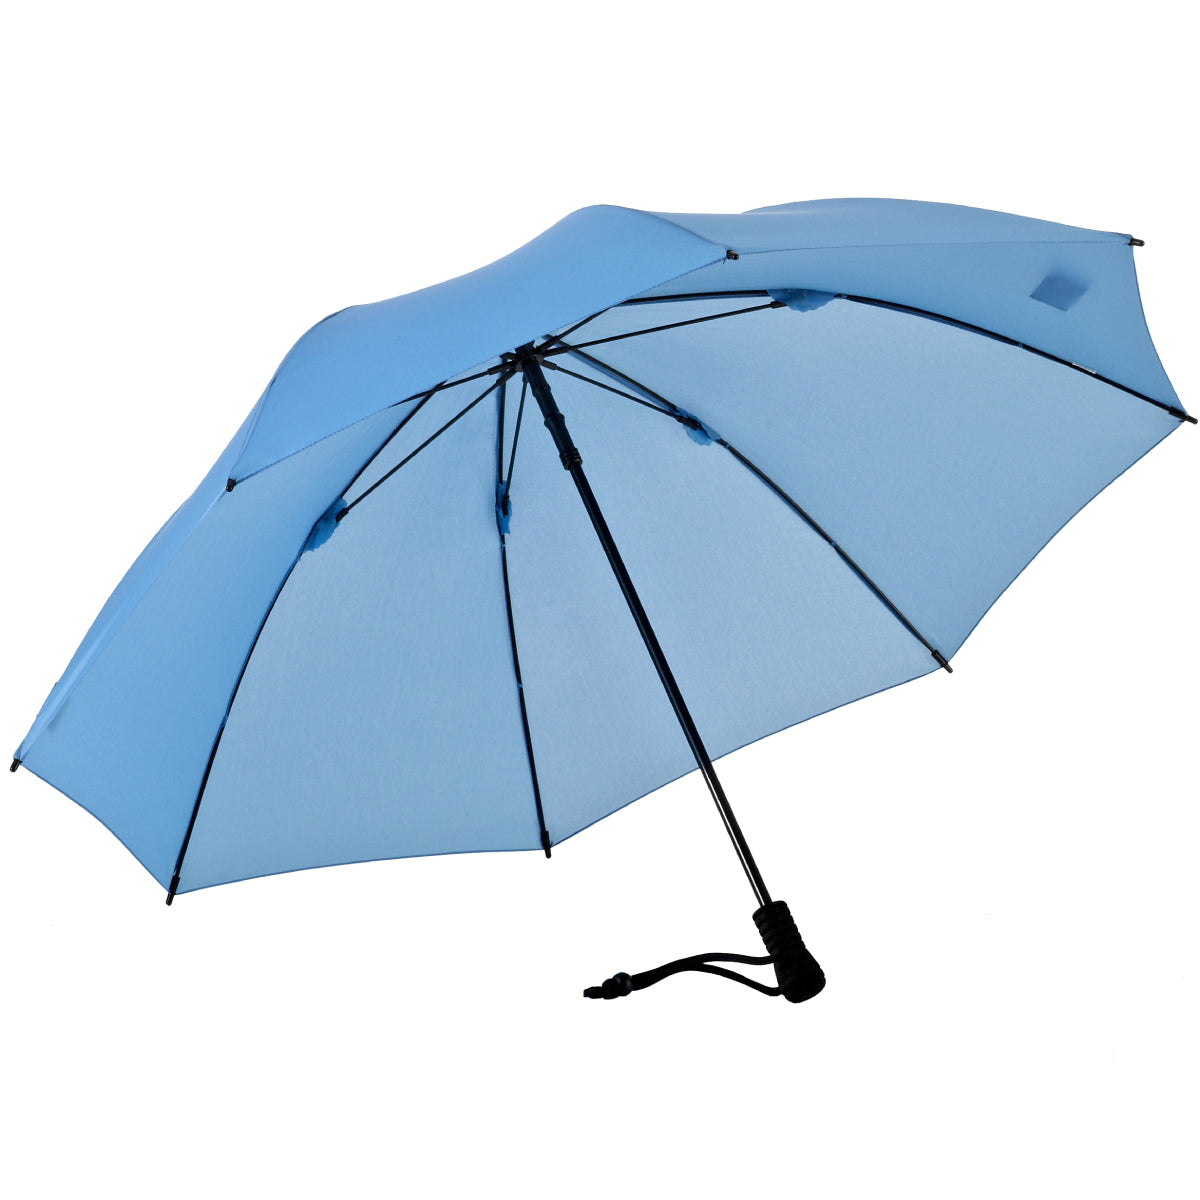 Umbrella EuroSCHIRM Swing Liteflex – USA EuroSCHIRM